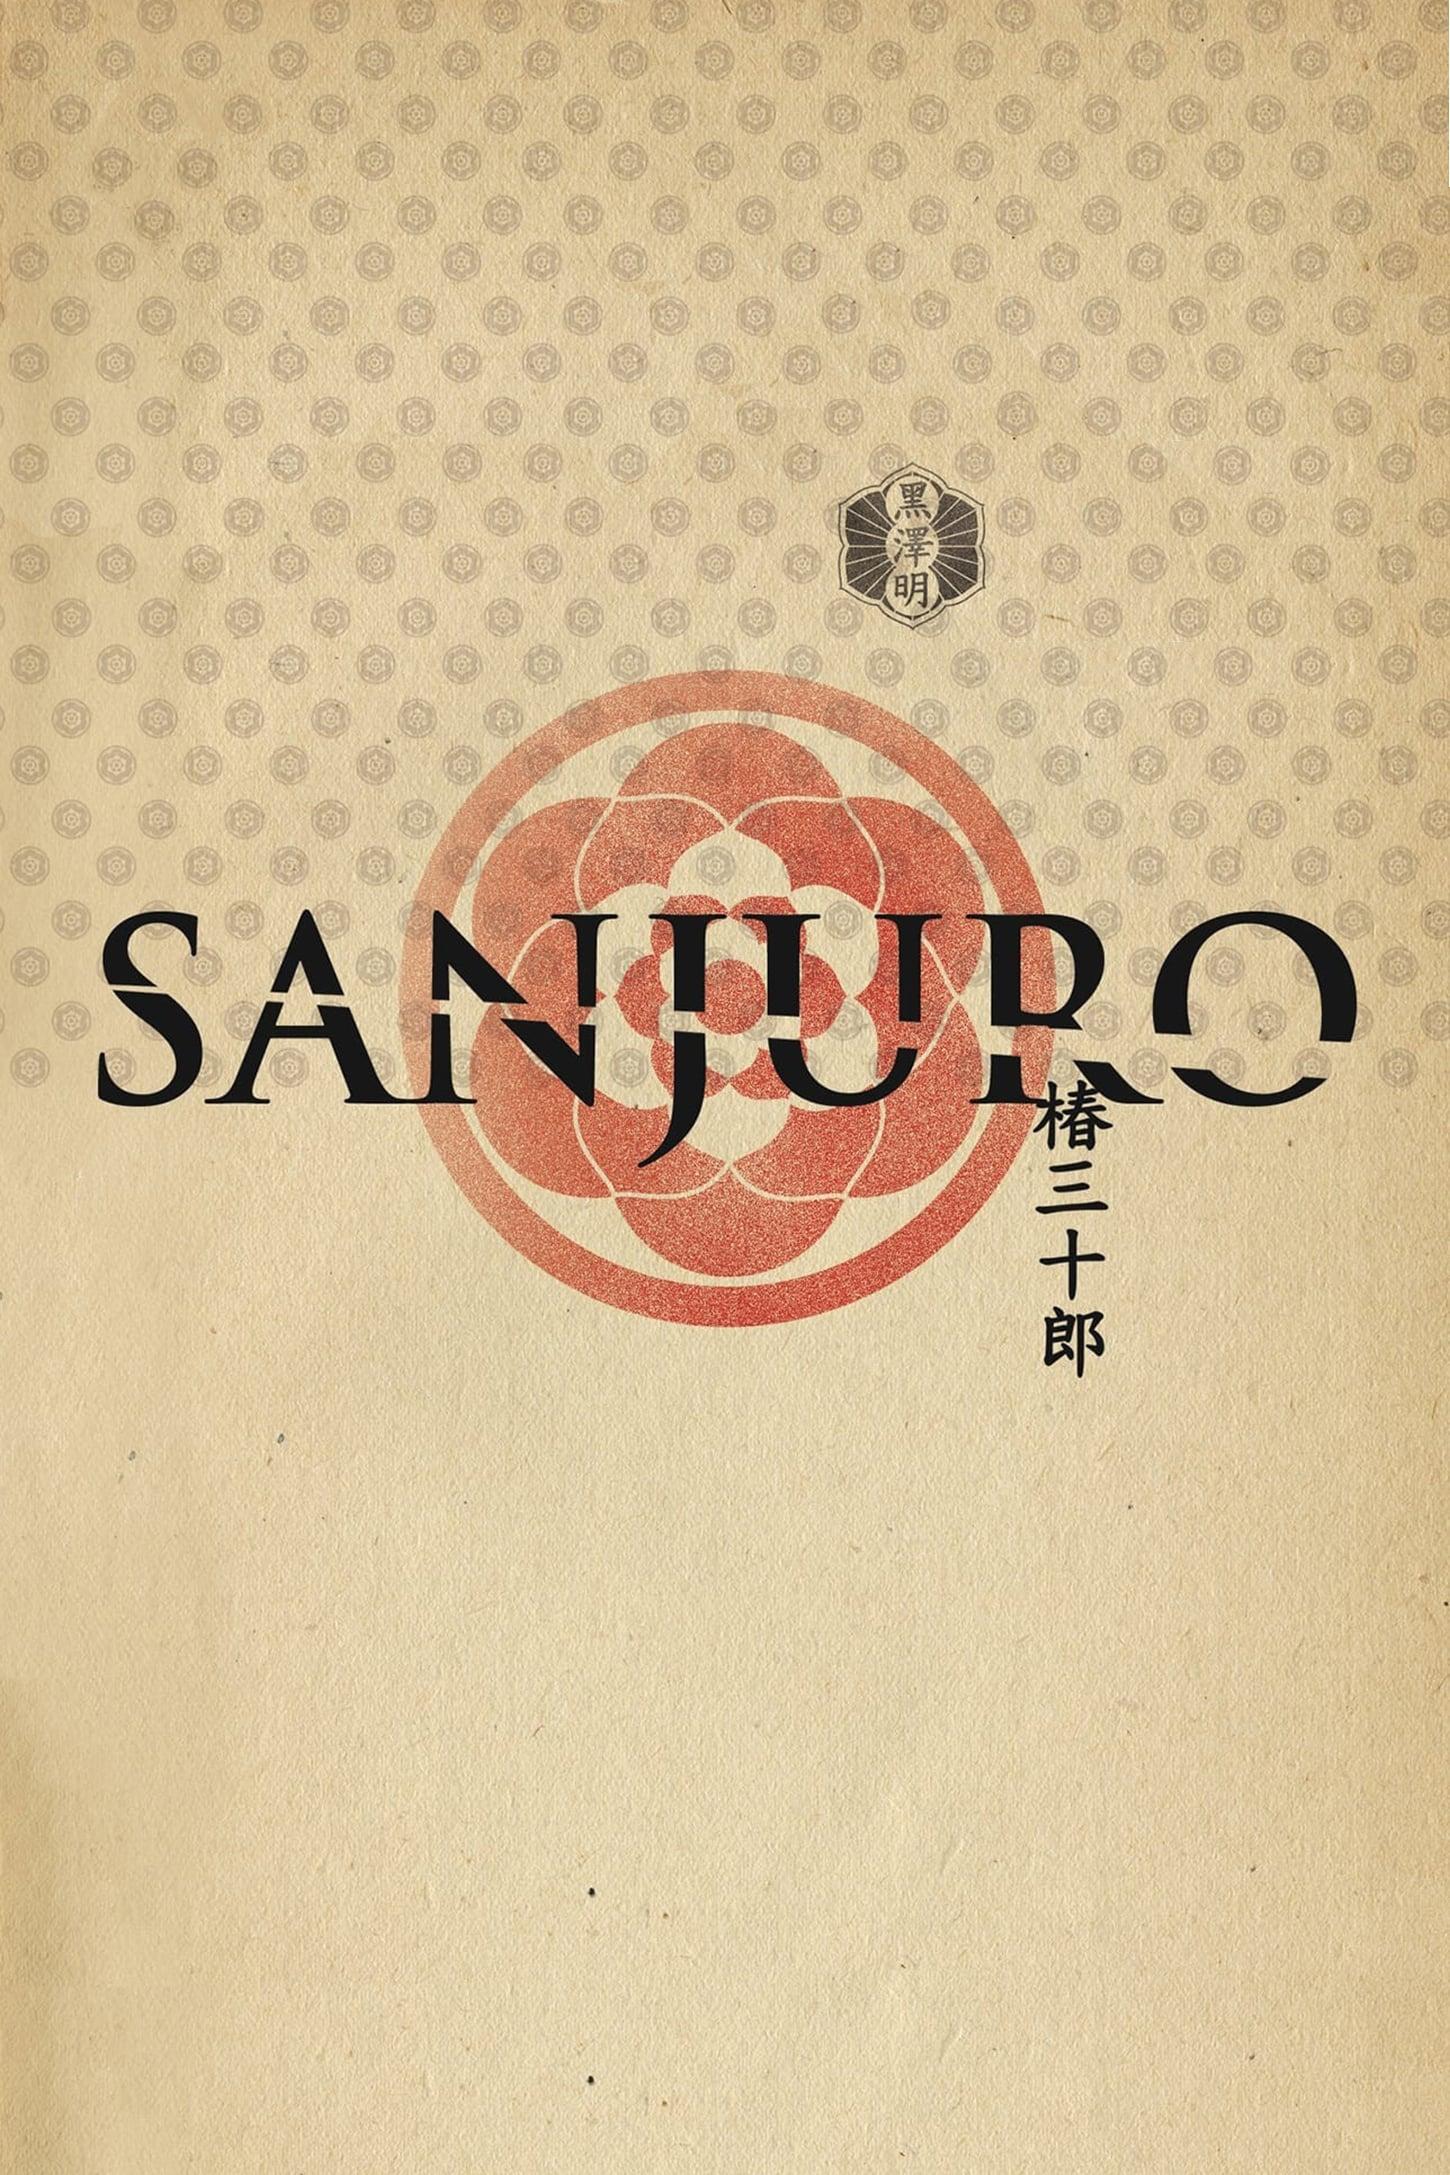 Sanjuro poster